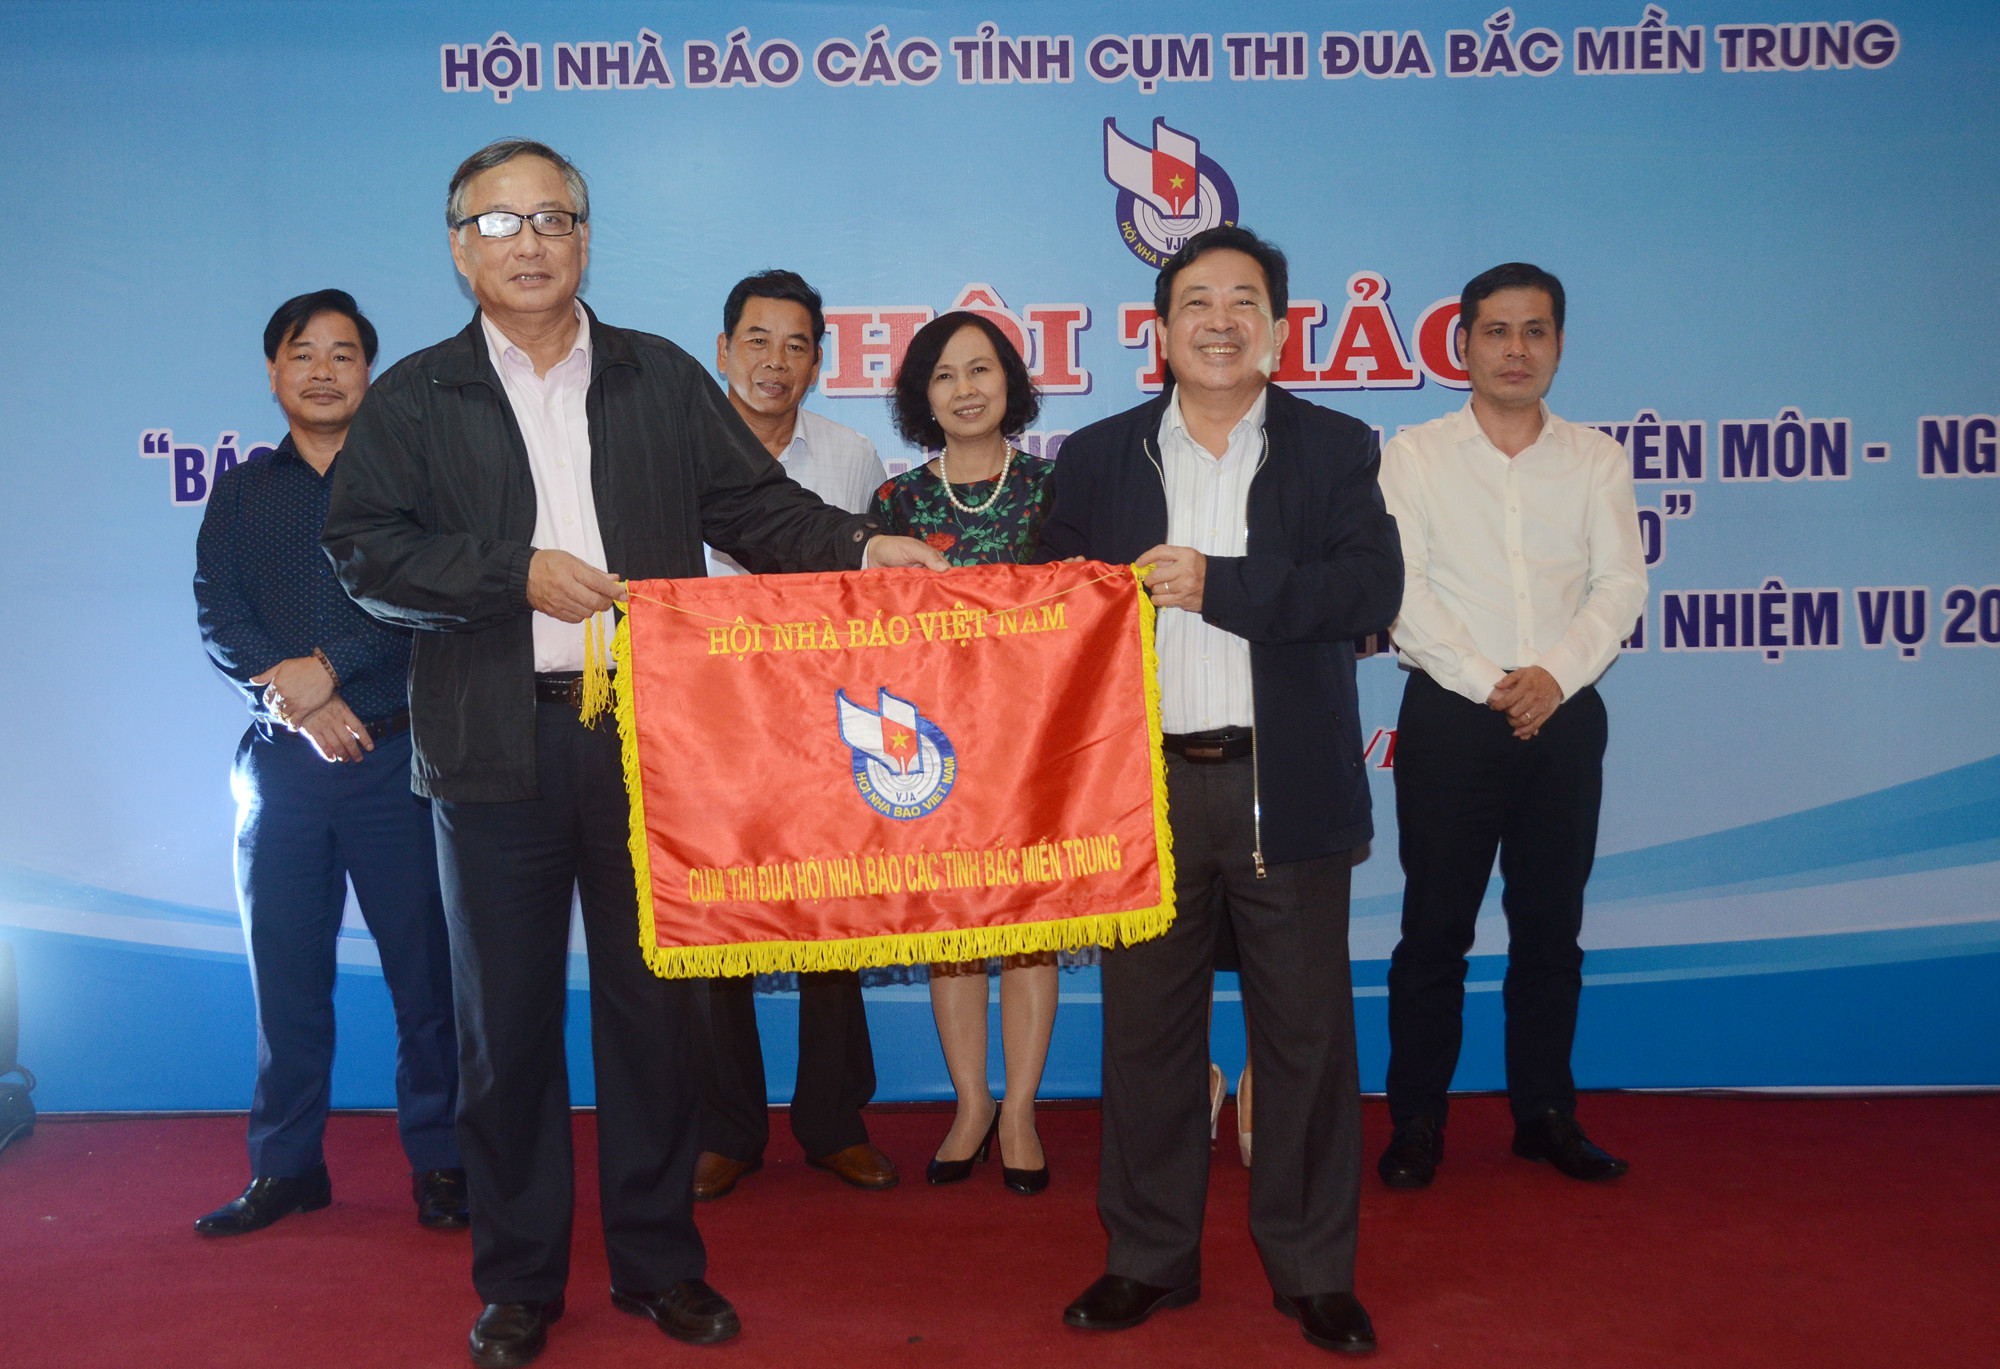 Trao cờ cụm trưởng thi đua năm 2019 cho Hội Nhà báo tỉnh Thừa Thiên Huế. Ảnh: Thành Chung